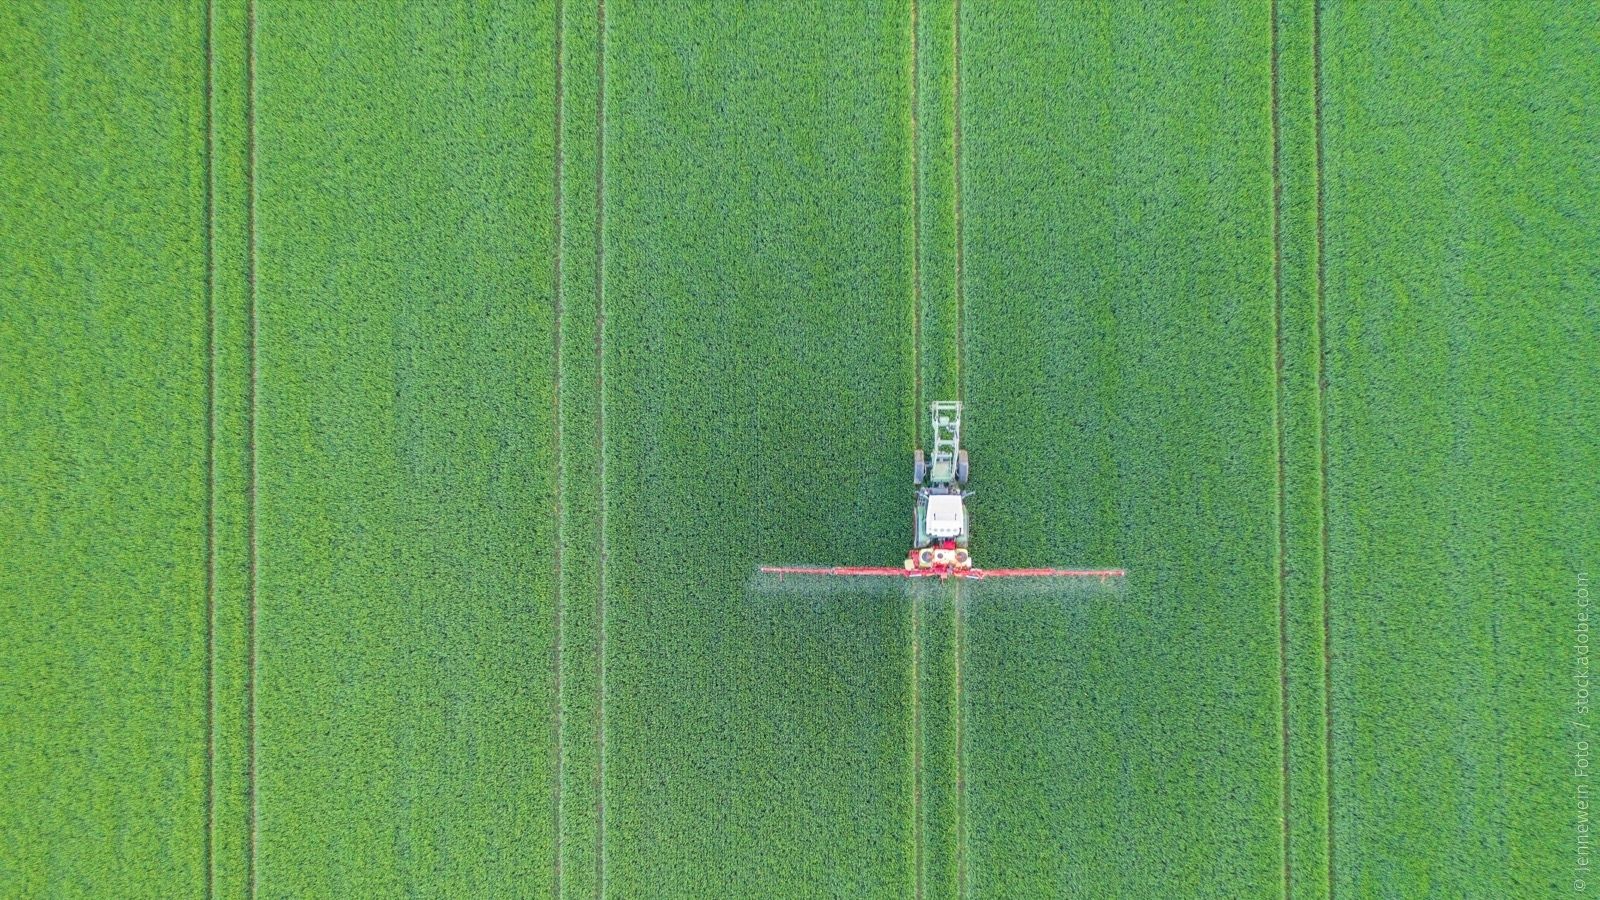 Blick aus der Vogelperspektive auf eine Maismonokultur. In einer der Fahrspuren bringt ein Bauer mit seinem Schlepper gerade Pestizide aus.